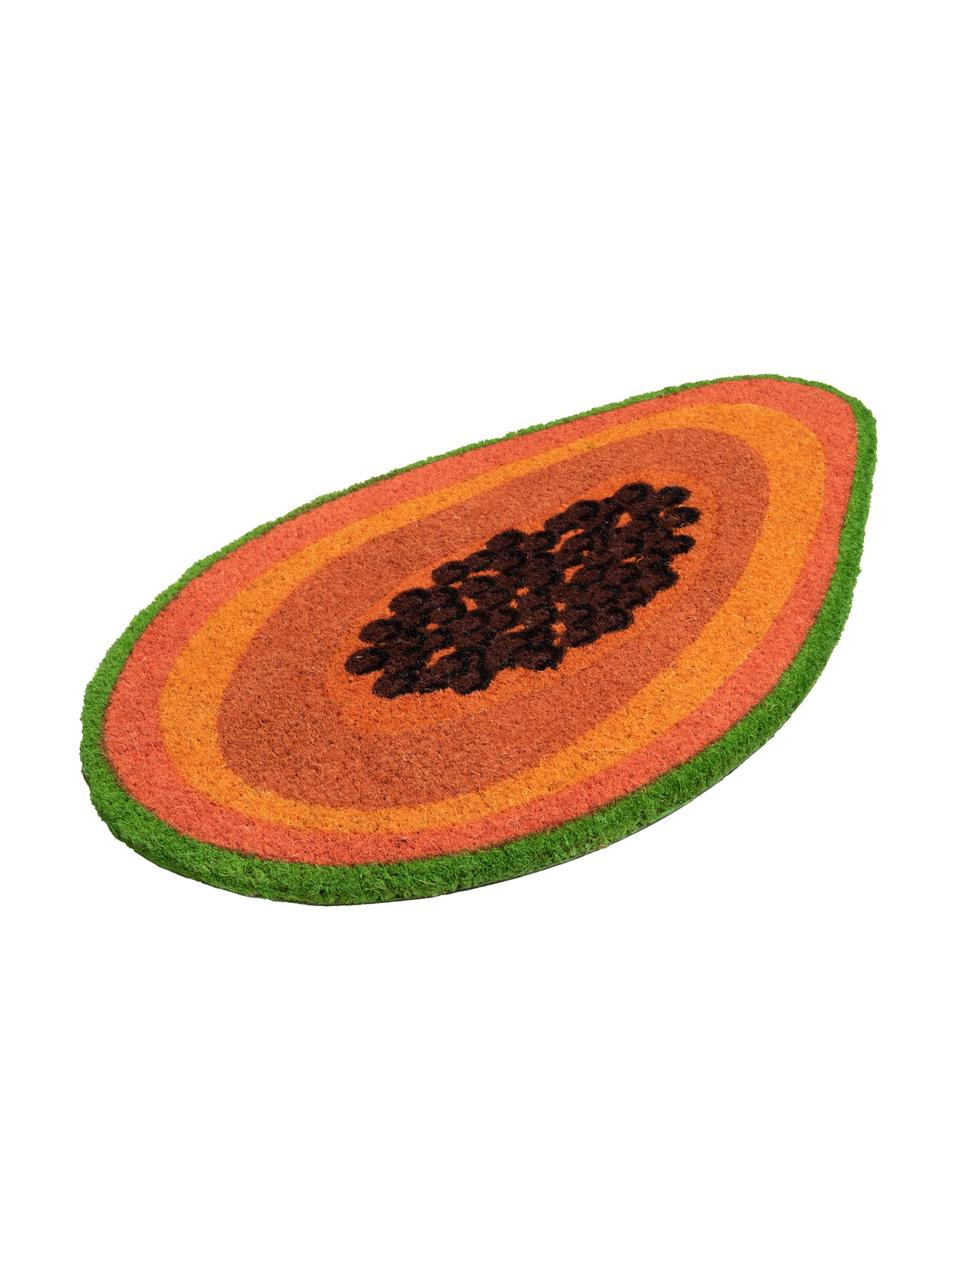 Rohož Papaya, Oranžová, hnědá, zelená